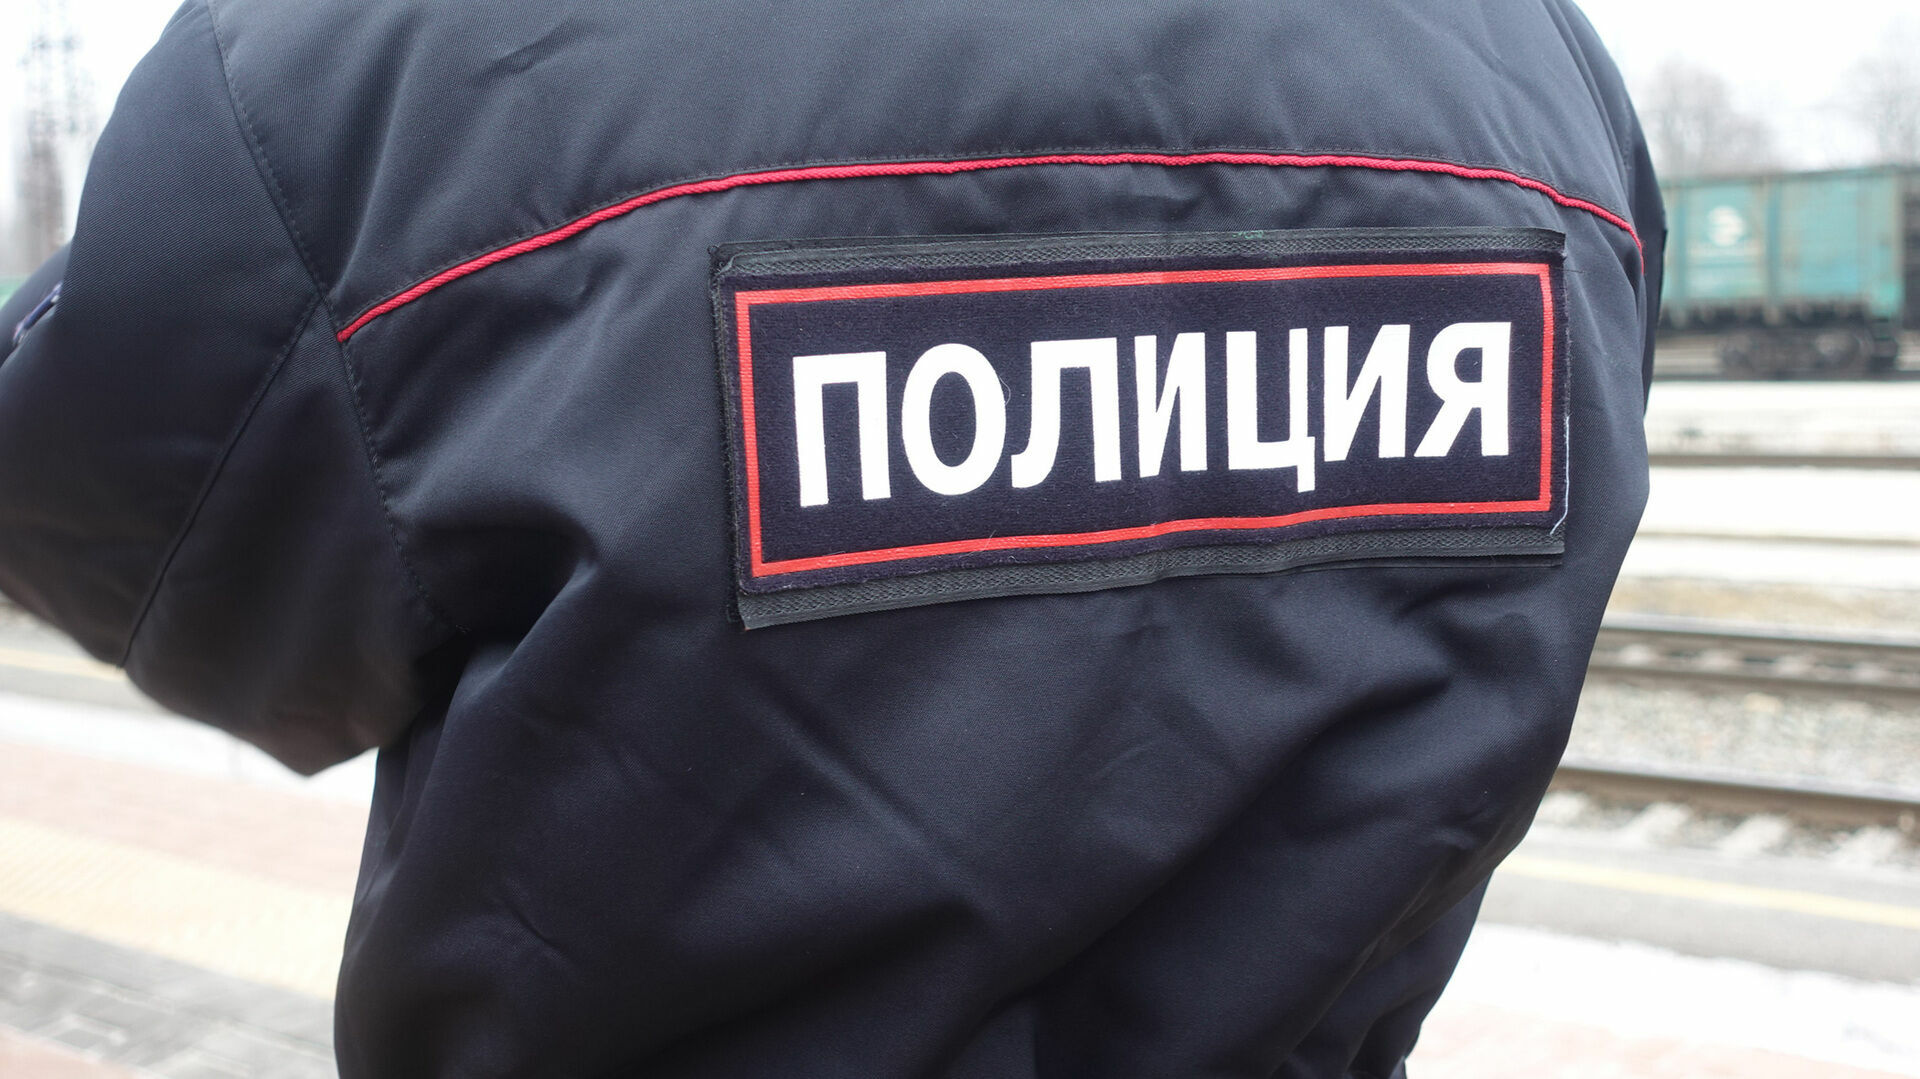 Редактора православного издательства поймали пьяной за рулем на городецкой трассе